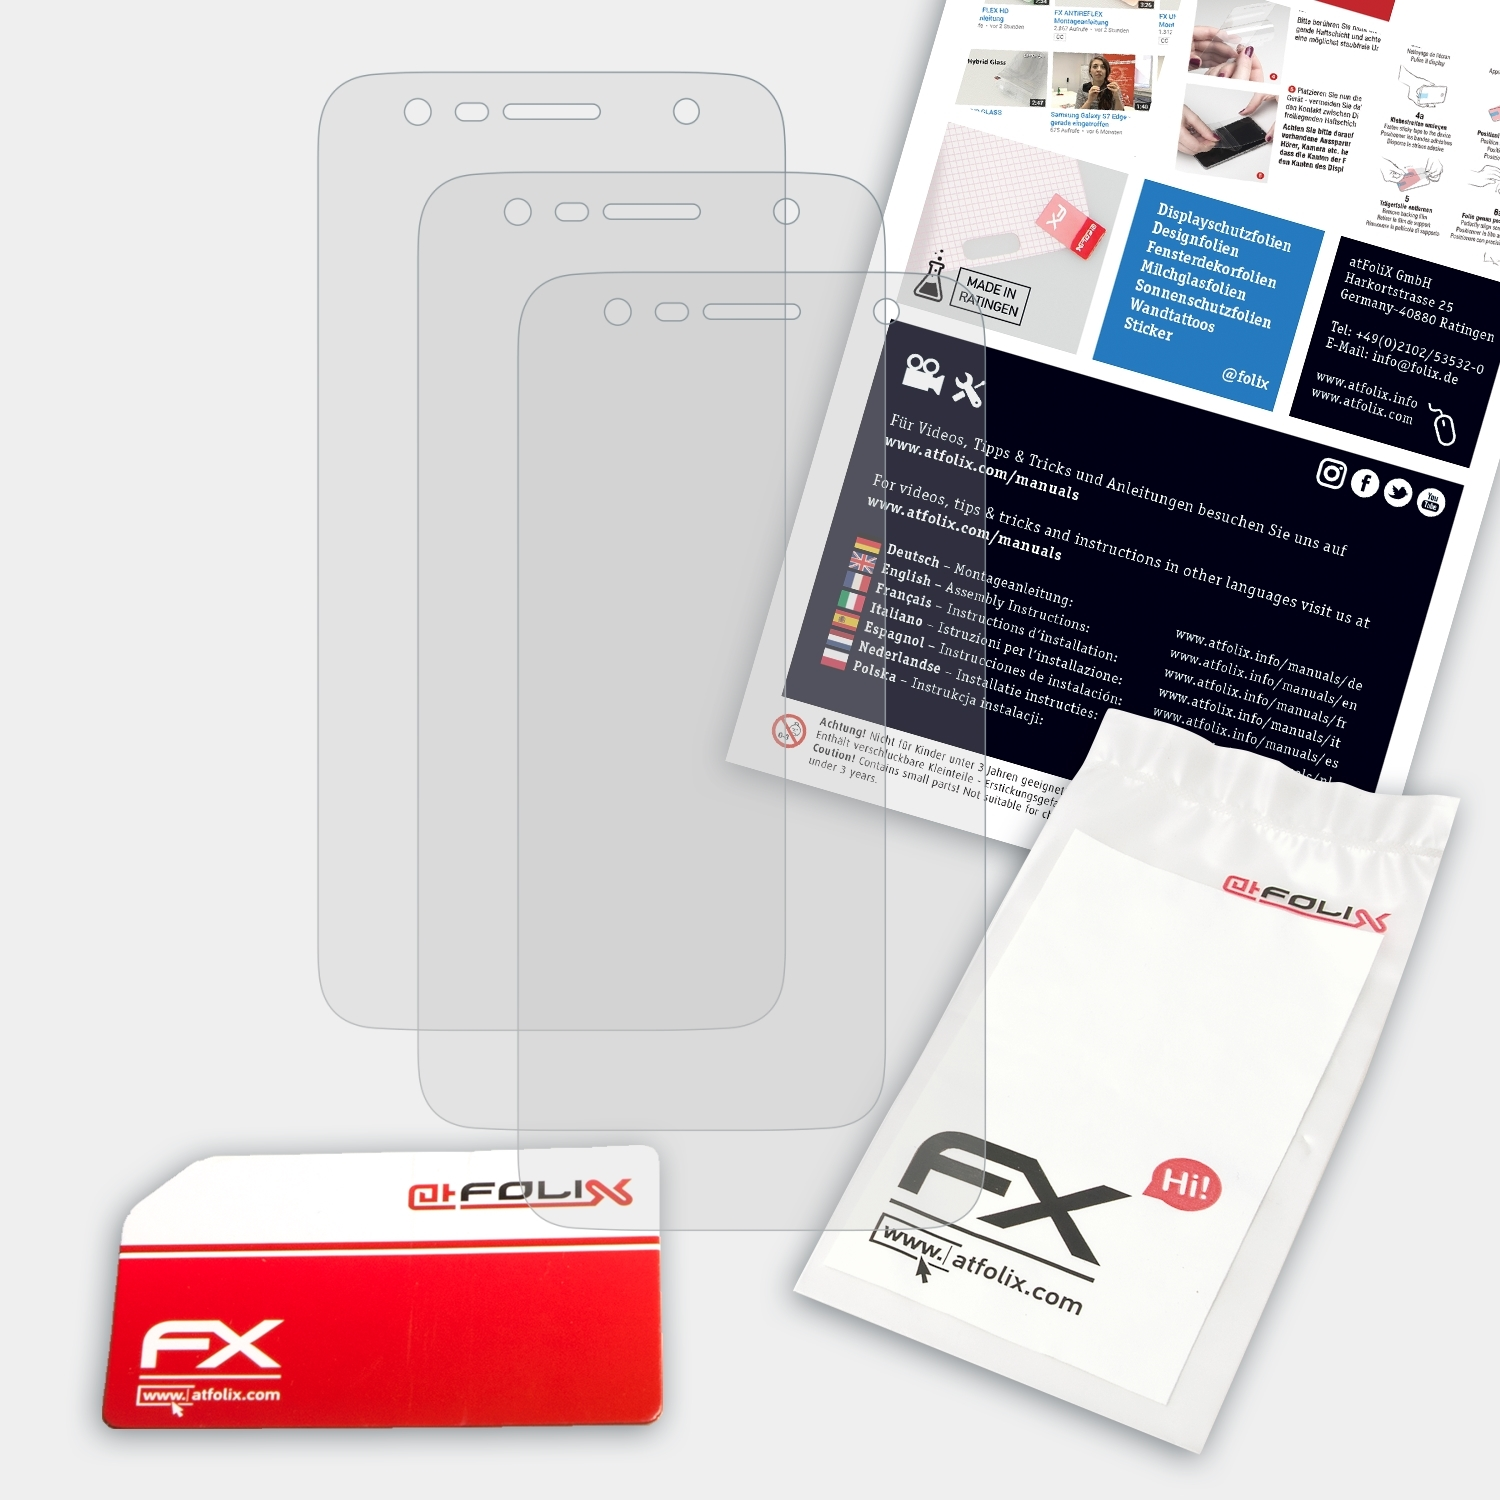 ATFOLIX 3x FX-Antireflex Displayschutz(für X LG Power2)